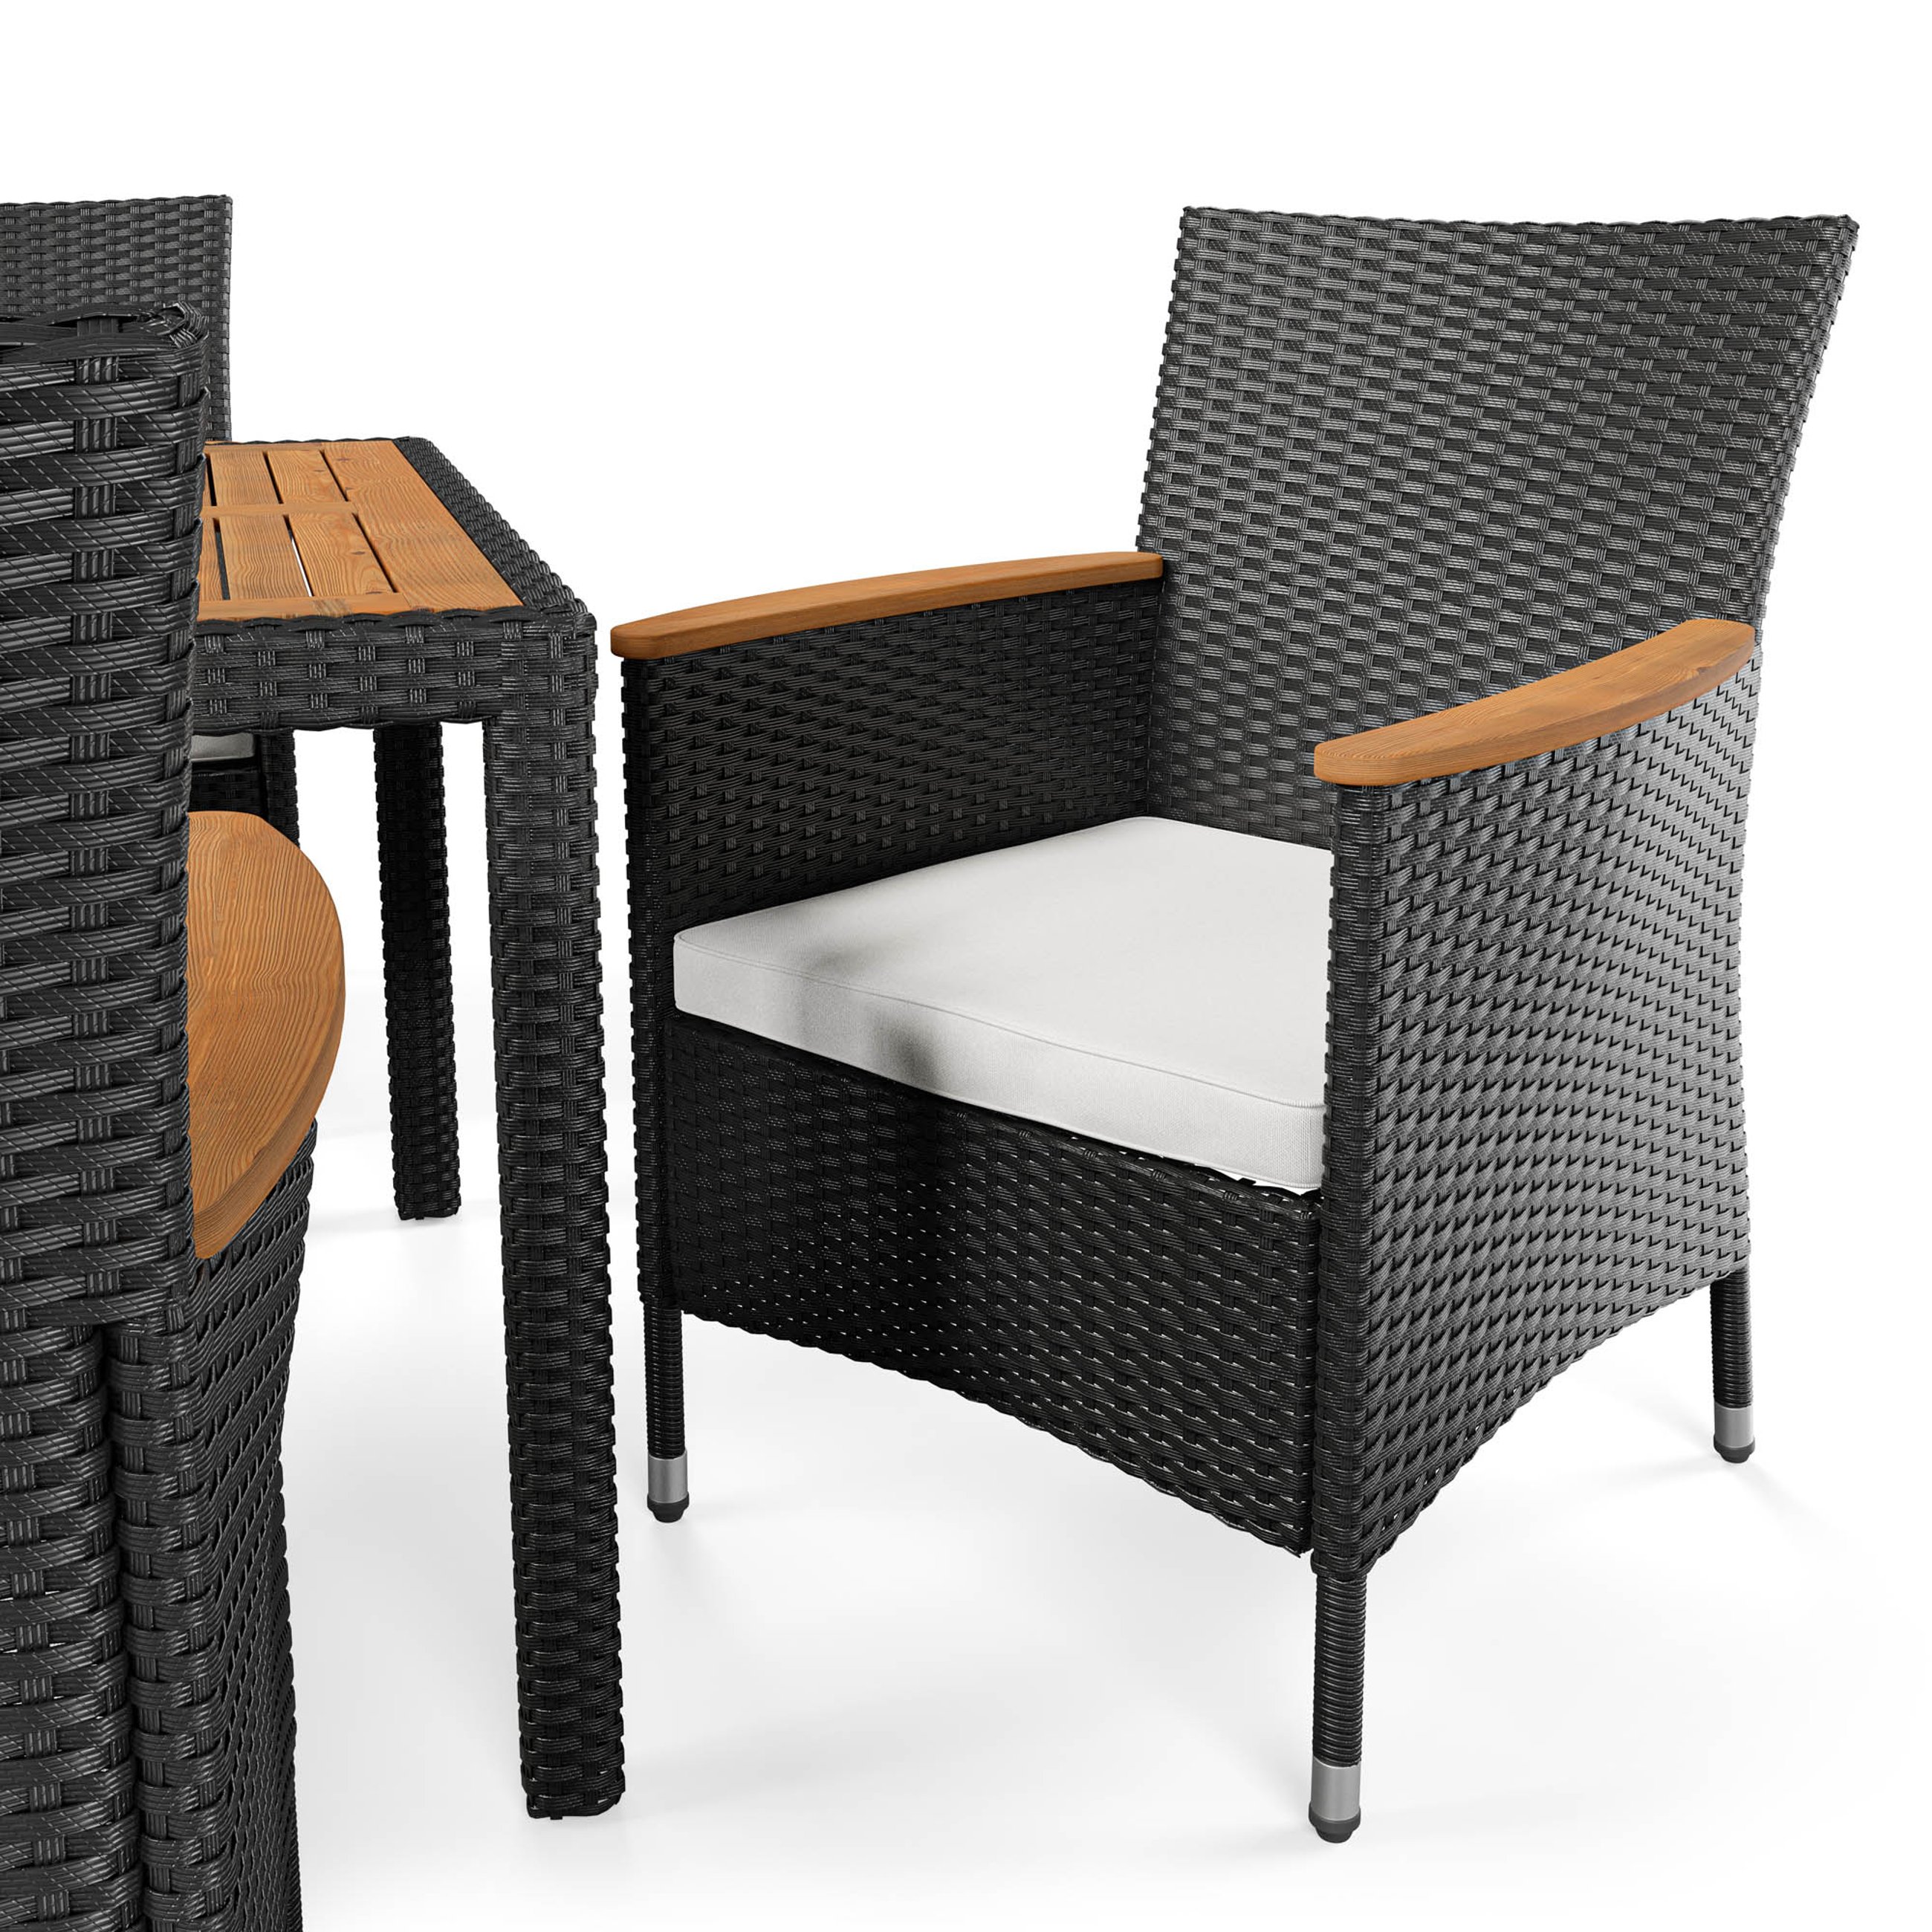 Fotele w zestawie mebli ogrodowych Verona czarna 8+1 wyposażone zostały w miękkie poduszki o grubości 5 cm